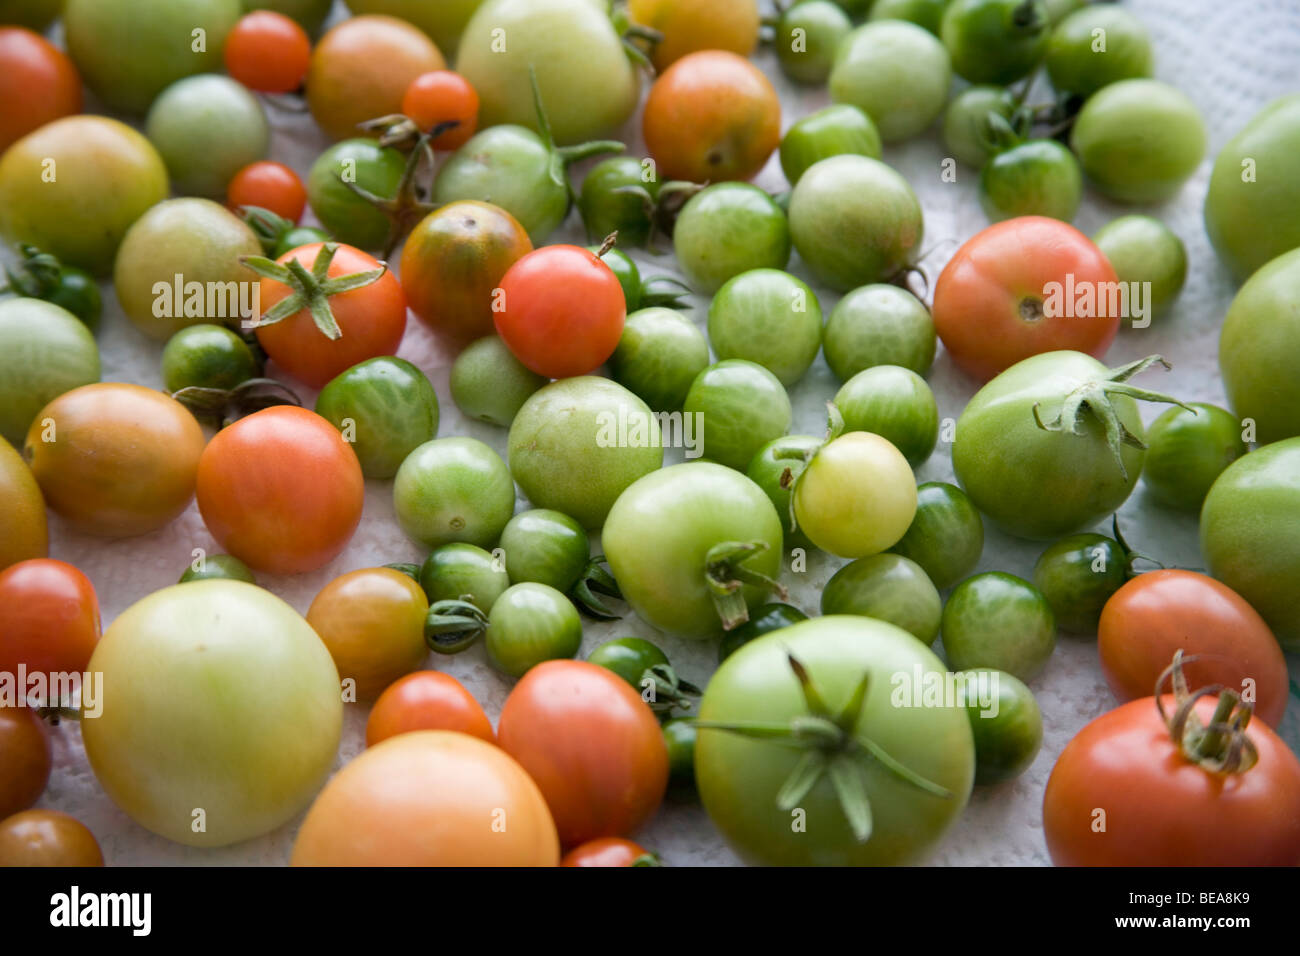 Unripe tomatoes Stock Photo